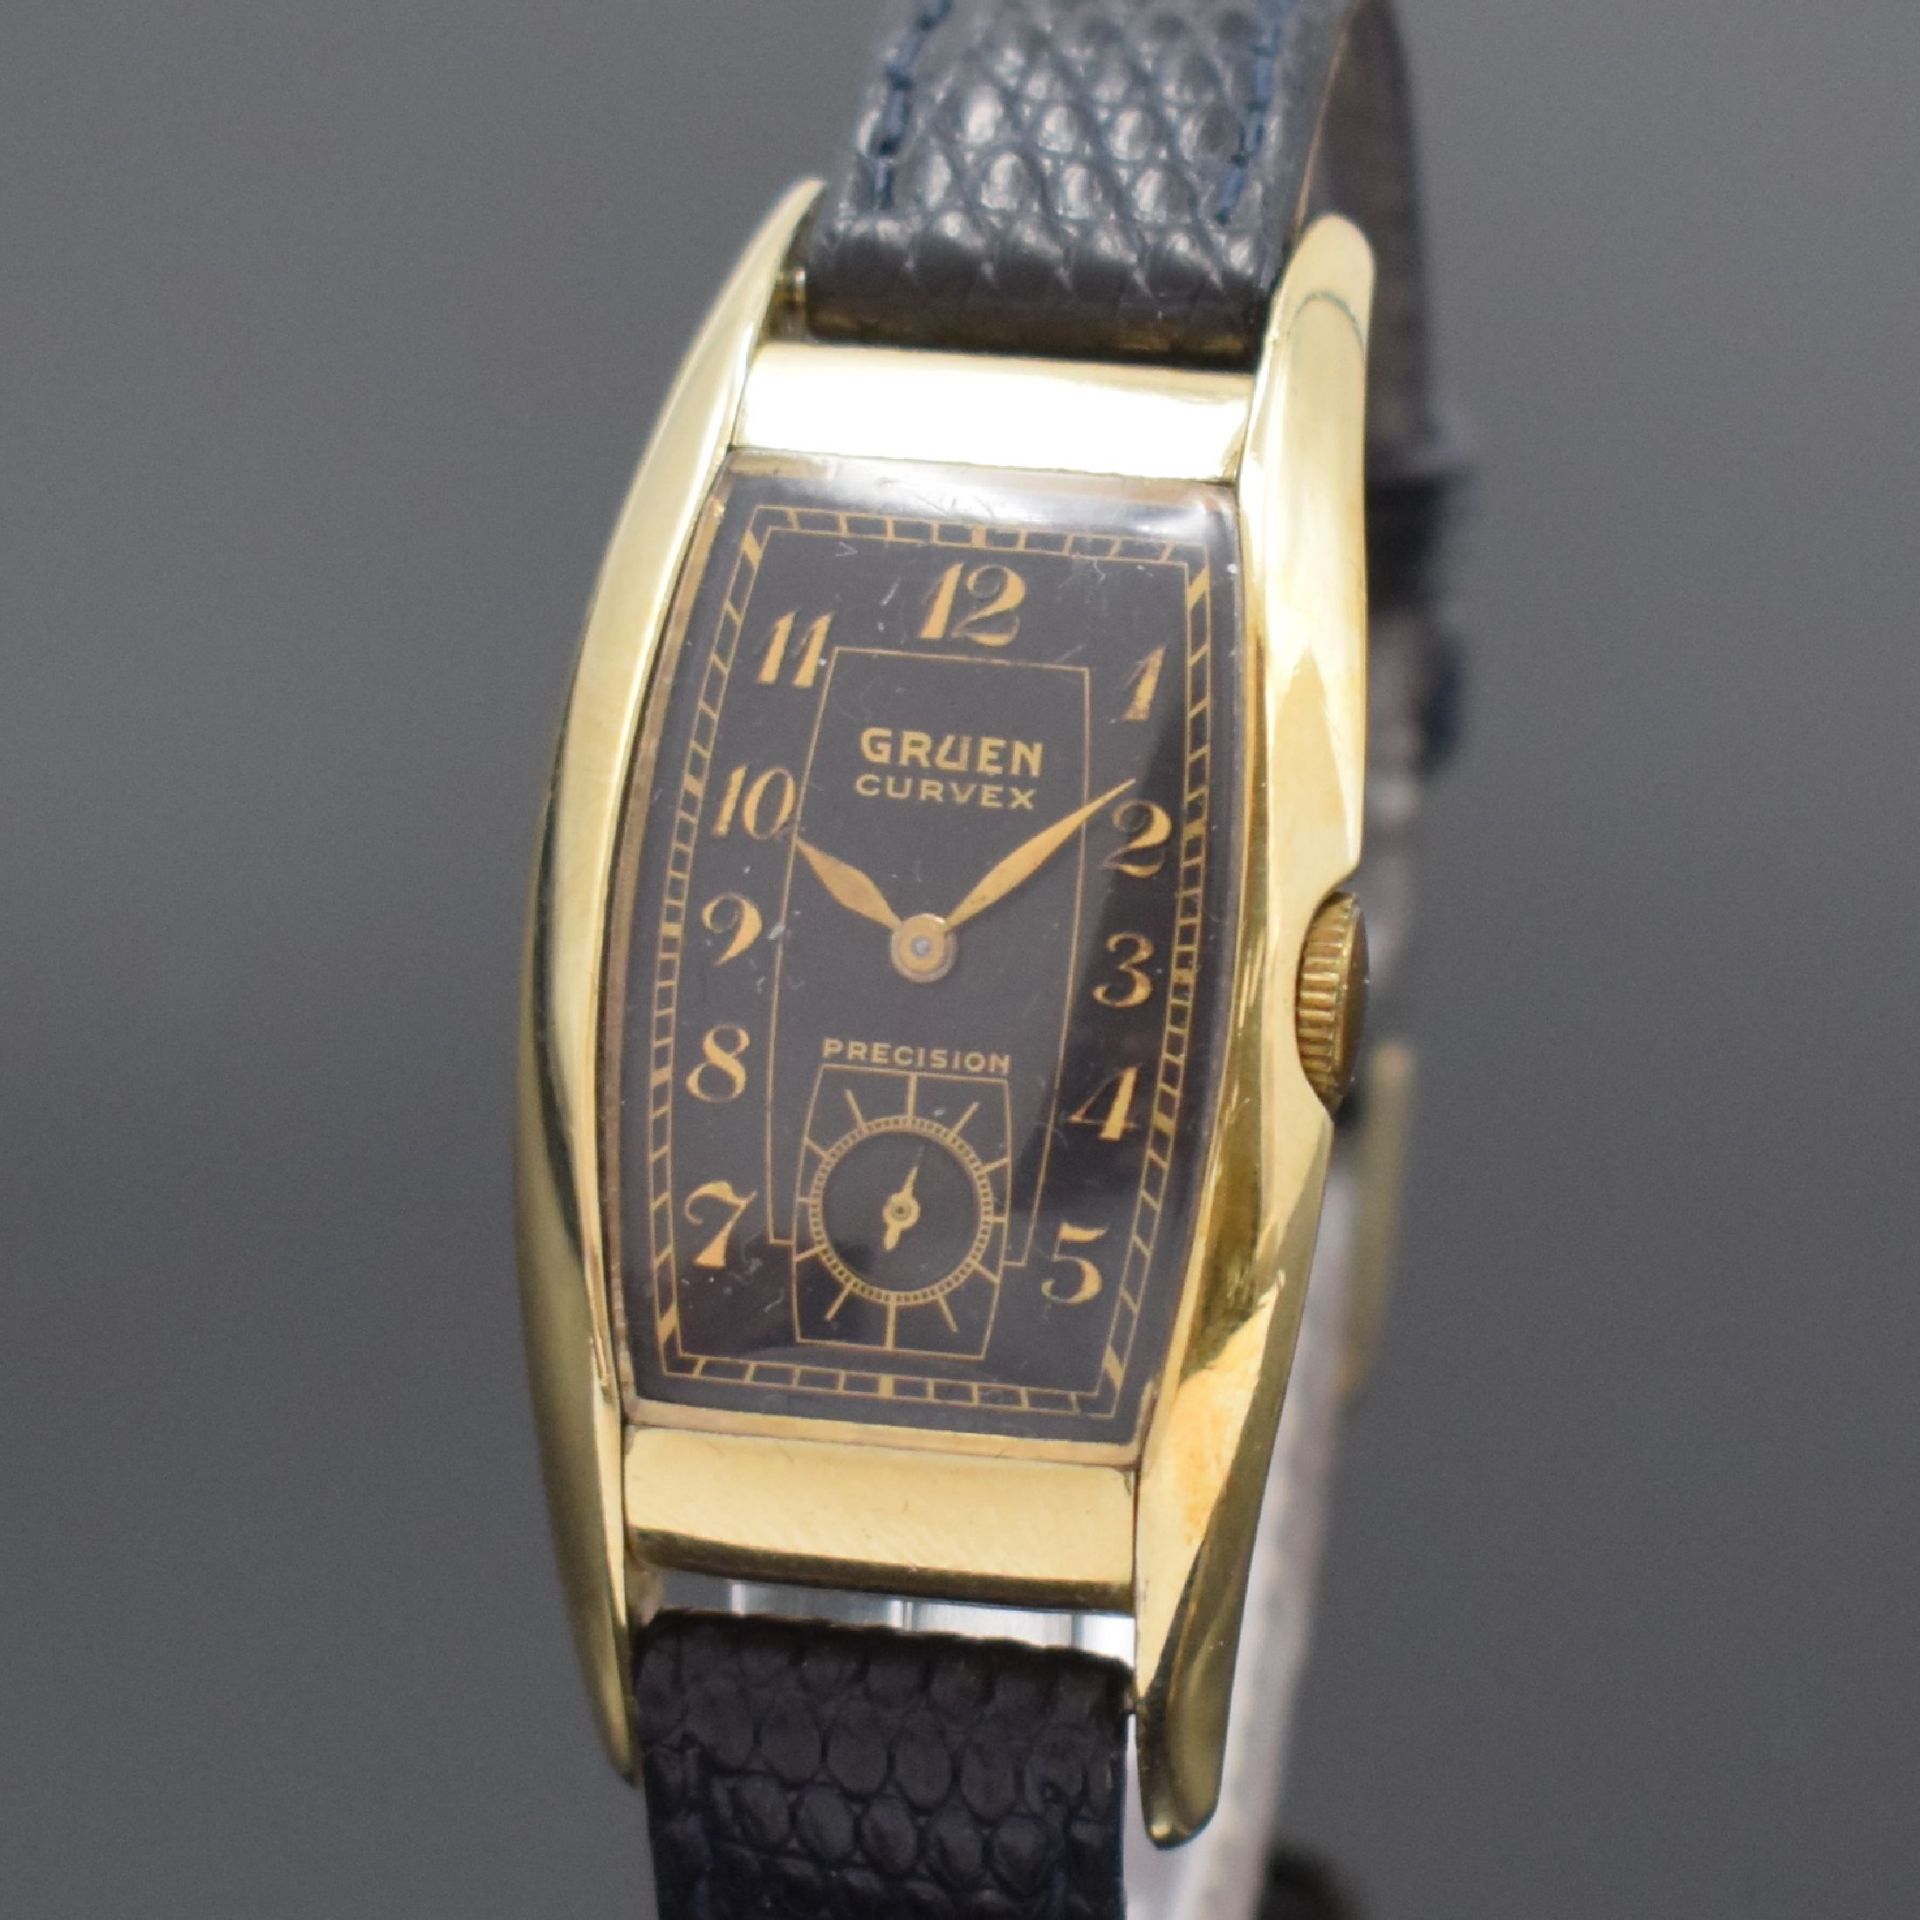 GRUEN Curvex Precision rechteckige Armbanduhr Referenz 311 - Bild 2 aus 6